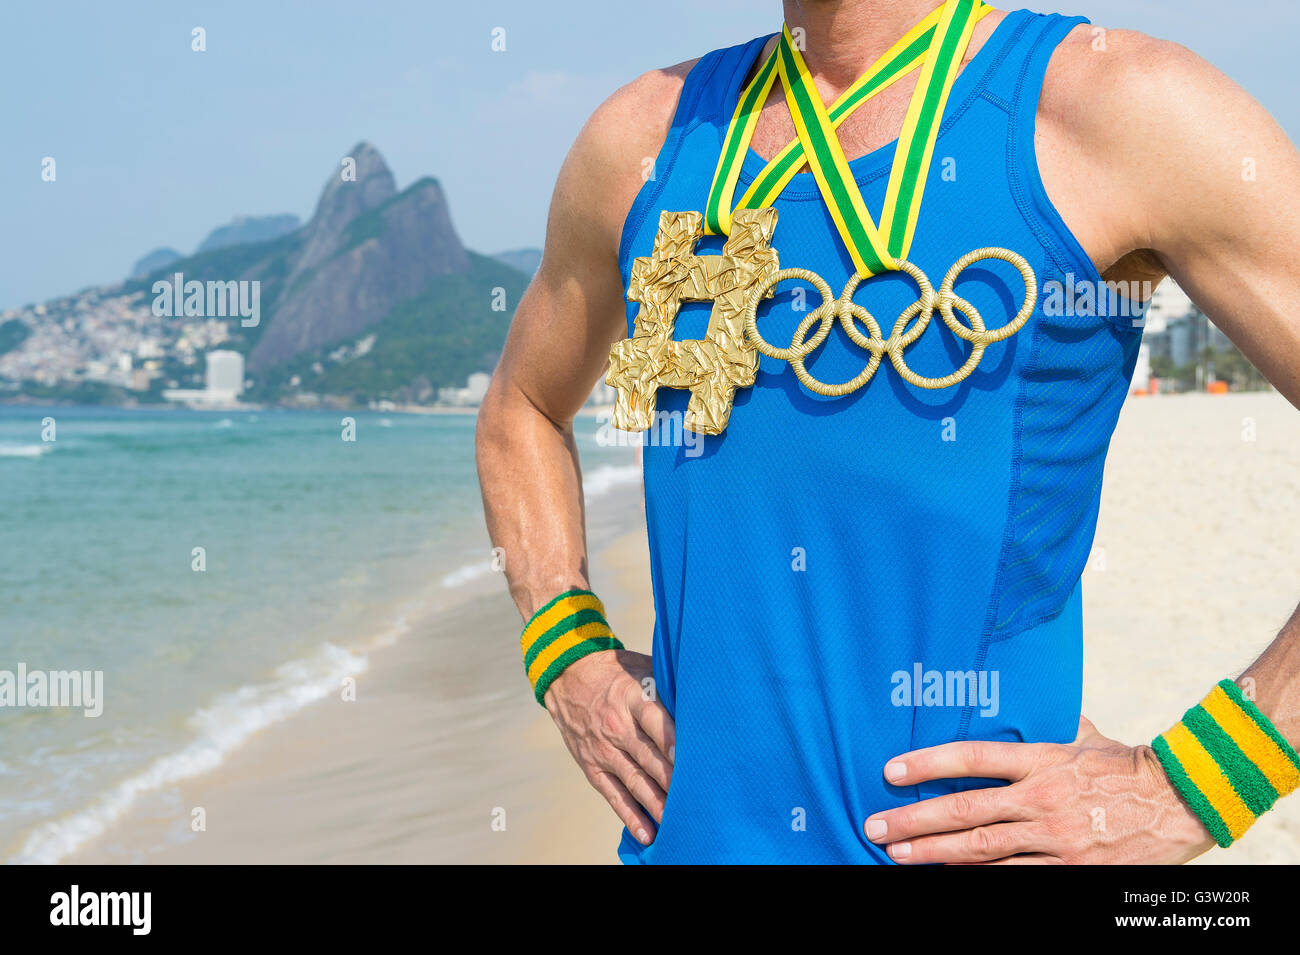 RIO DE JANEIRO - 10. März 2016: Sportler tragen Hashtag und Olympischen Ringe gold Medaillen steht am Strand von Ipanema. Stockfoto